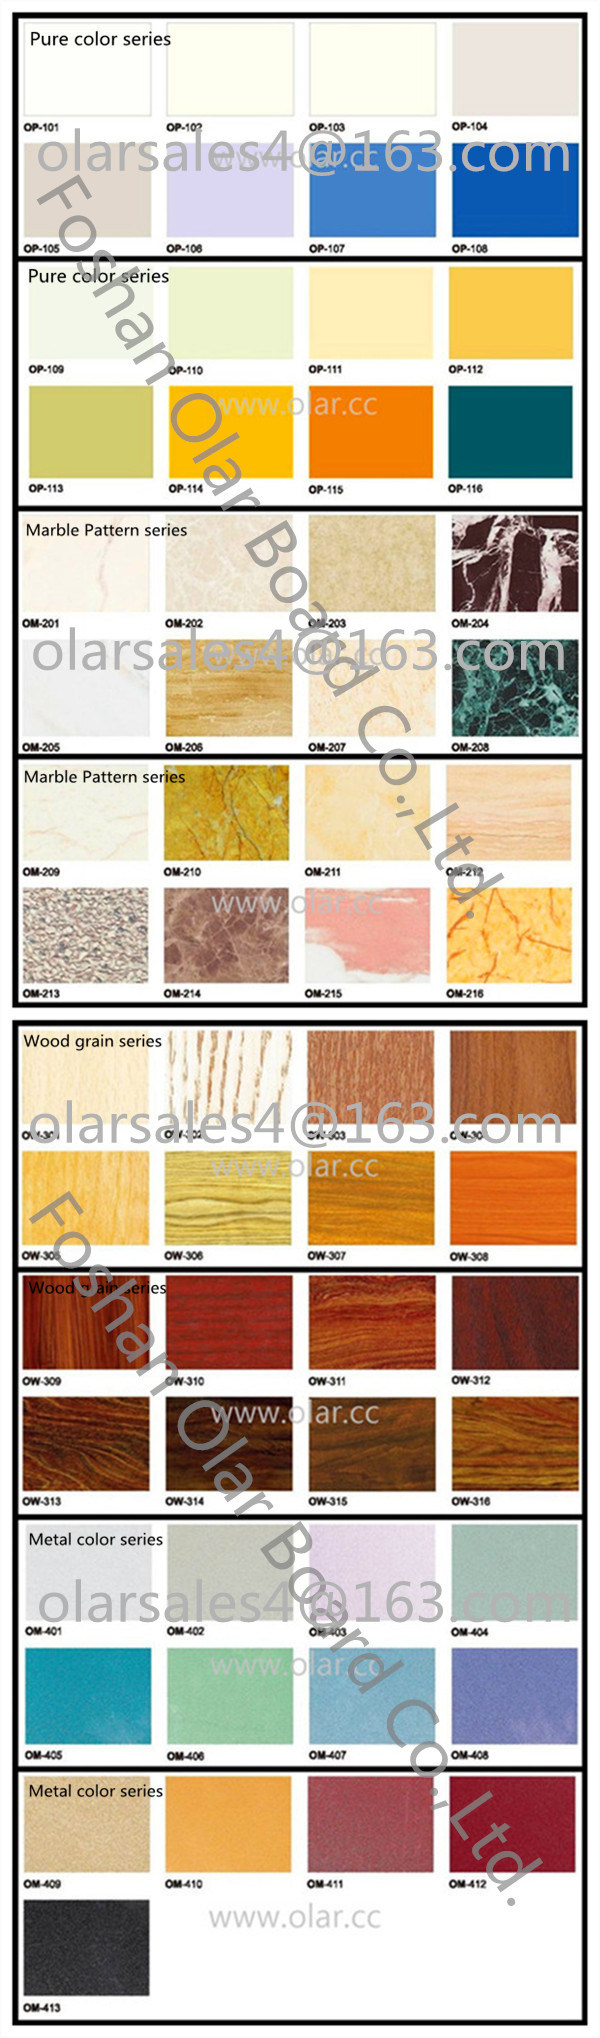 Olar Panel--Granite Grain Panel Fiber Cement Decoration Board